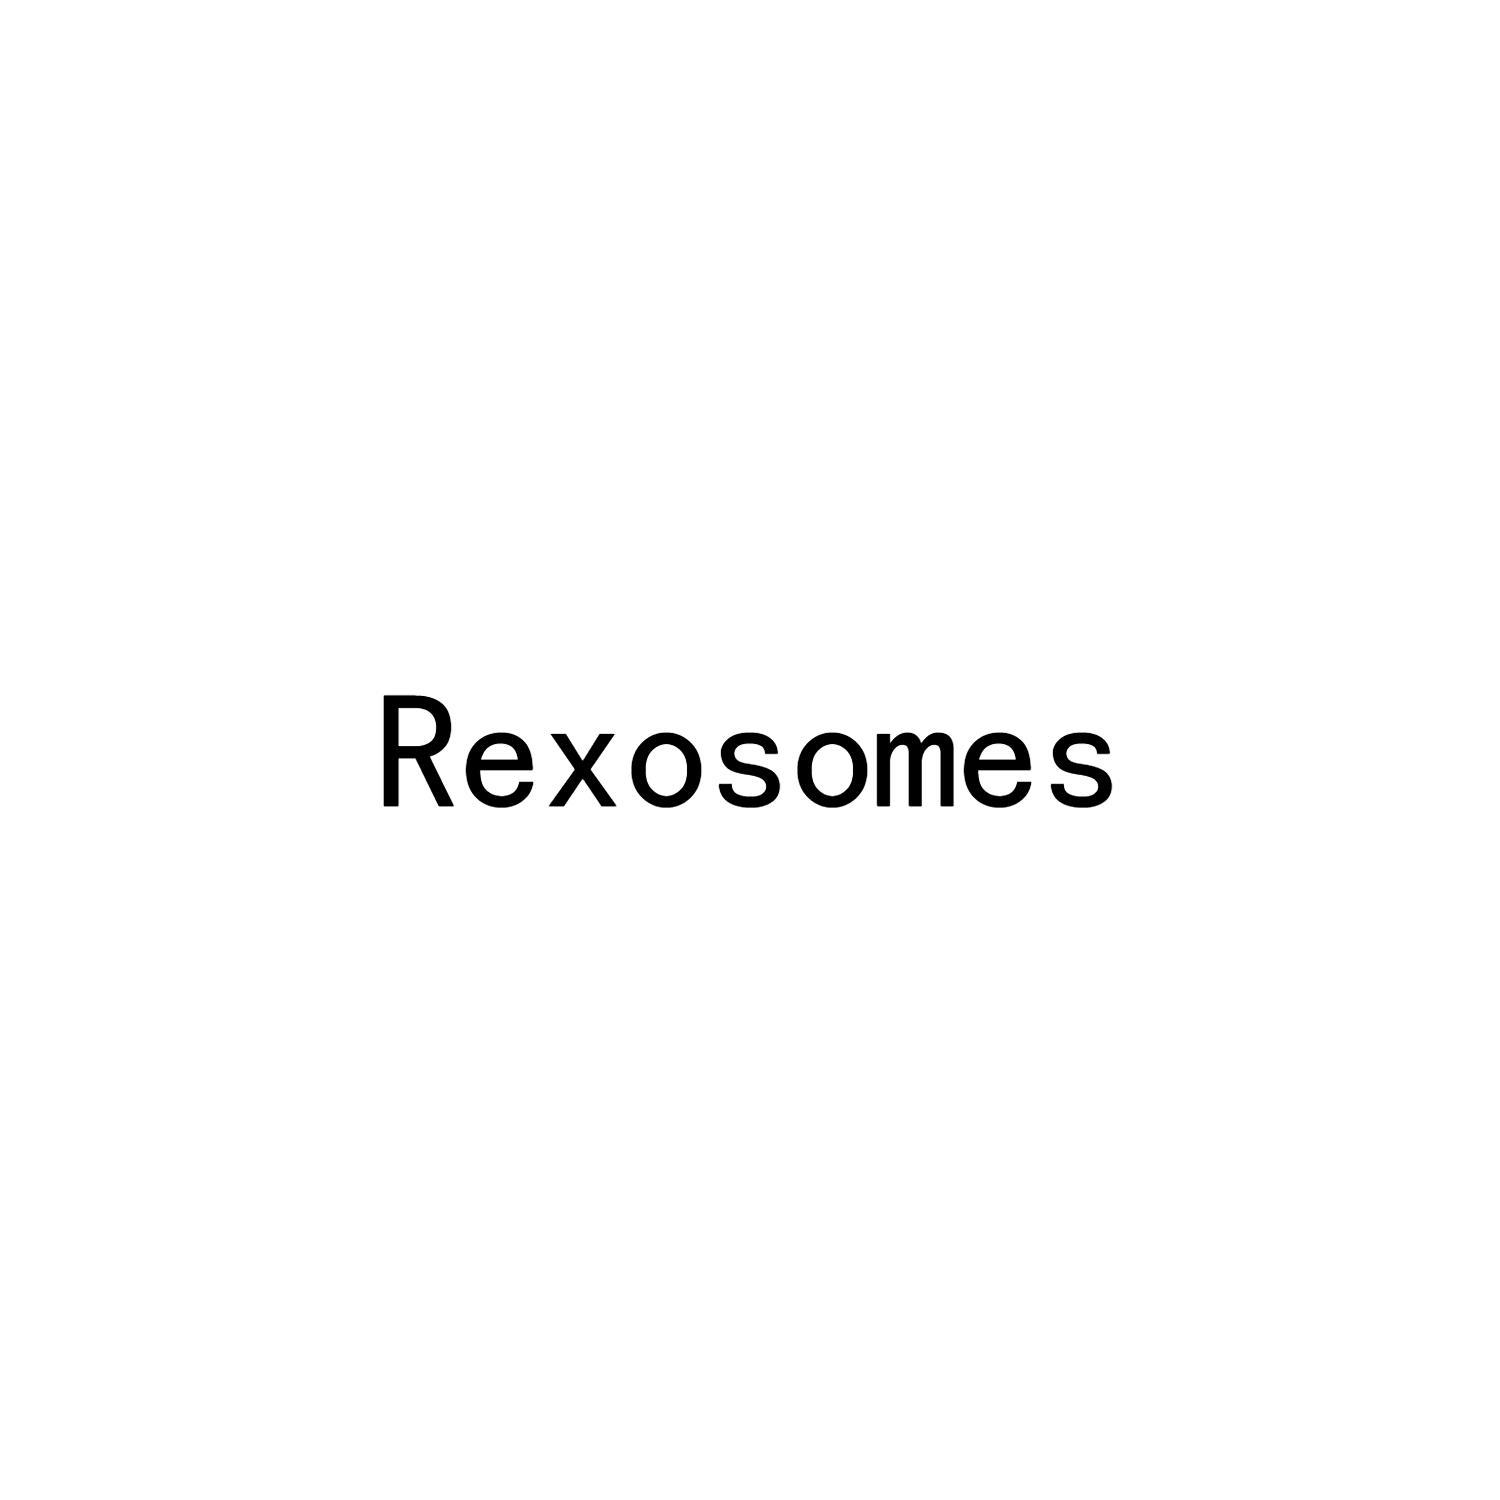 REXOSOMES